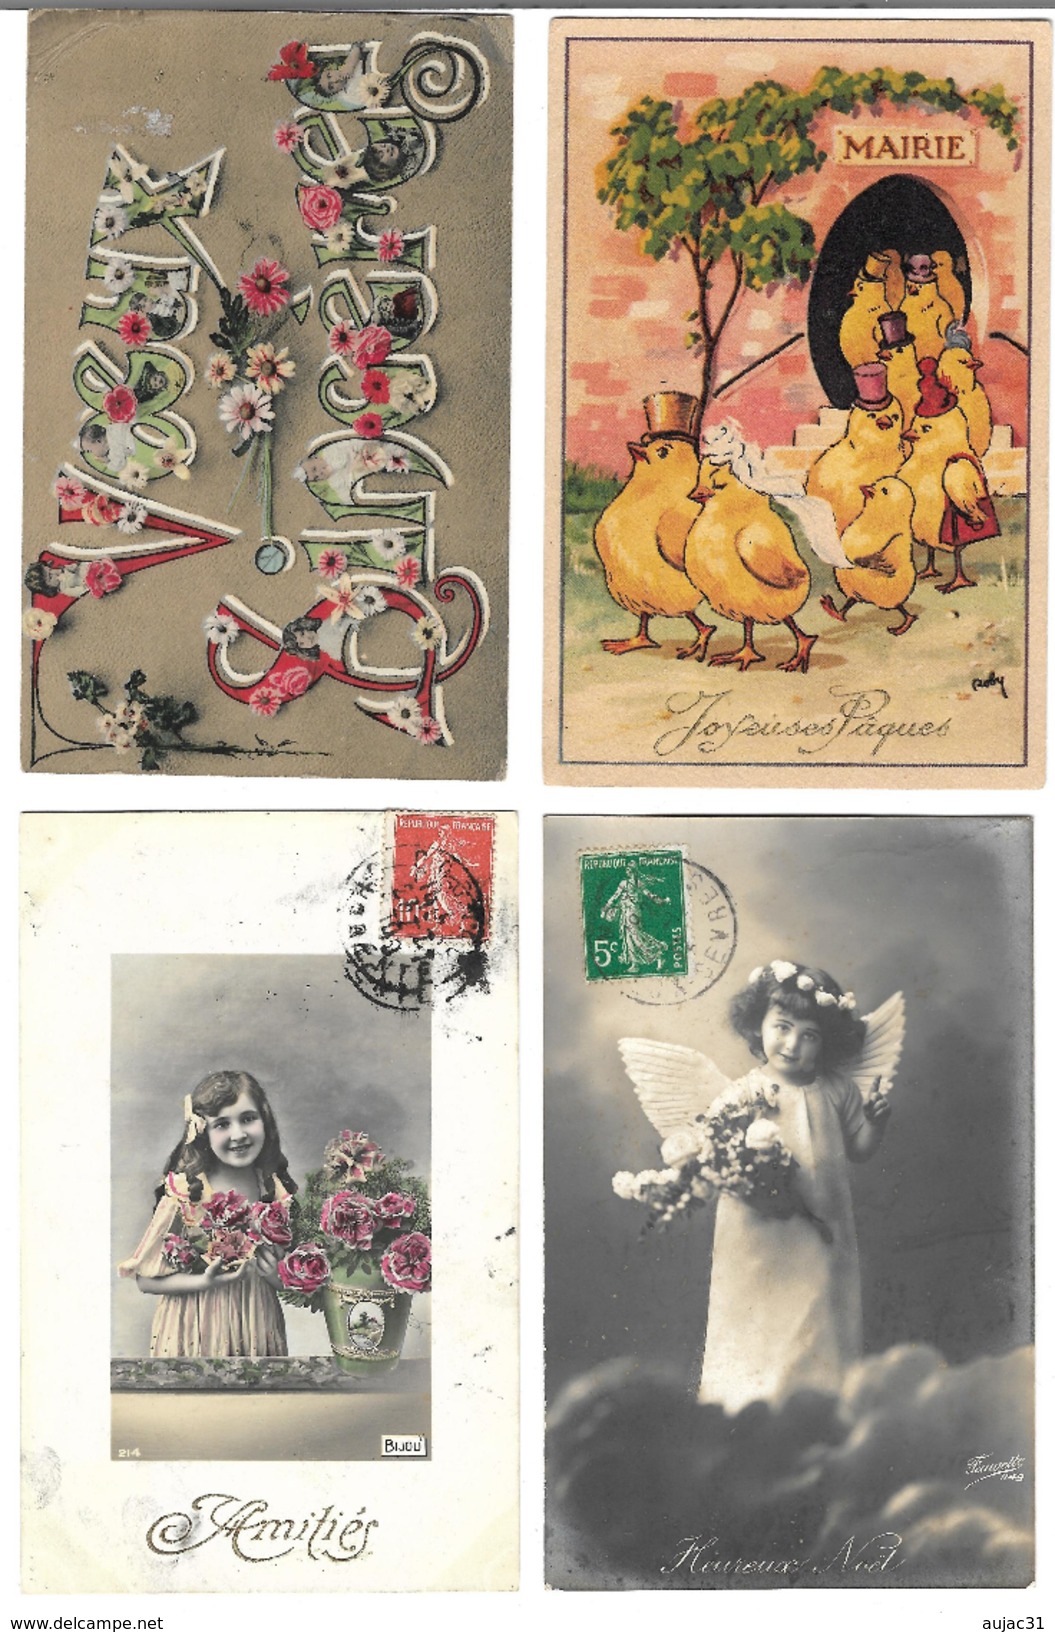 Fantaisies divers - Lot de 100 cartes - 1er avril - Noël - Enfants - Femmes - Fleurs - Couples - Pâques - etc